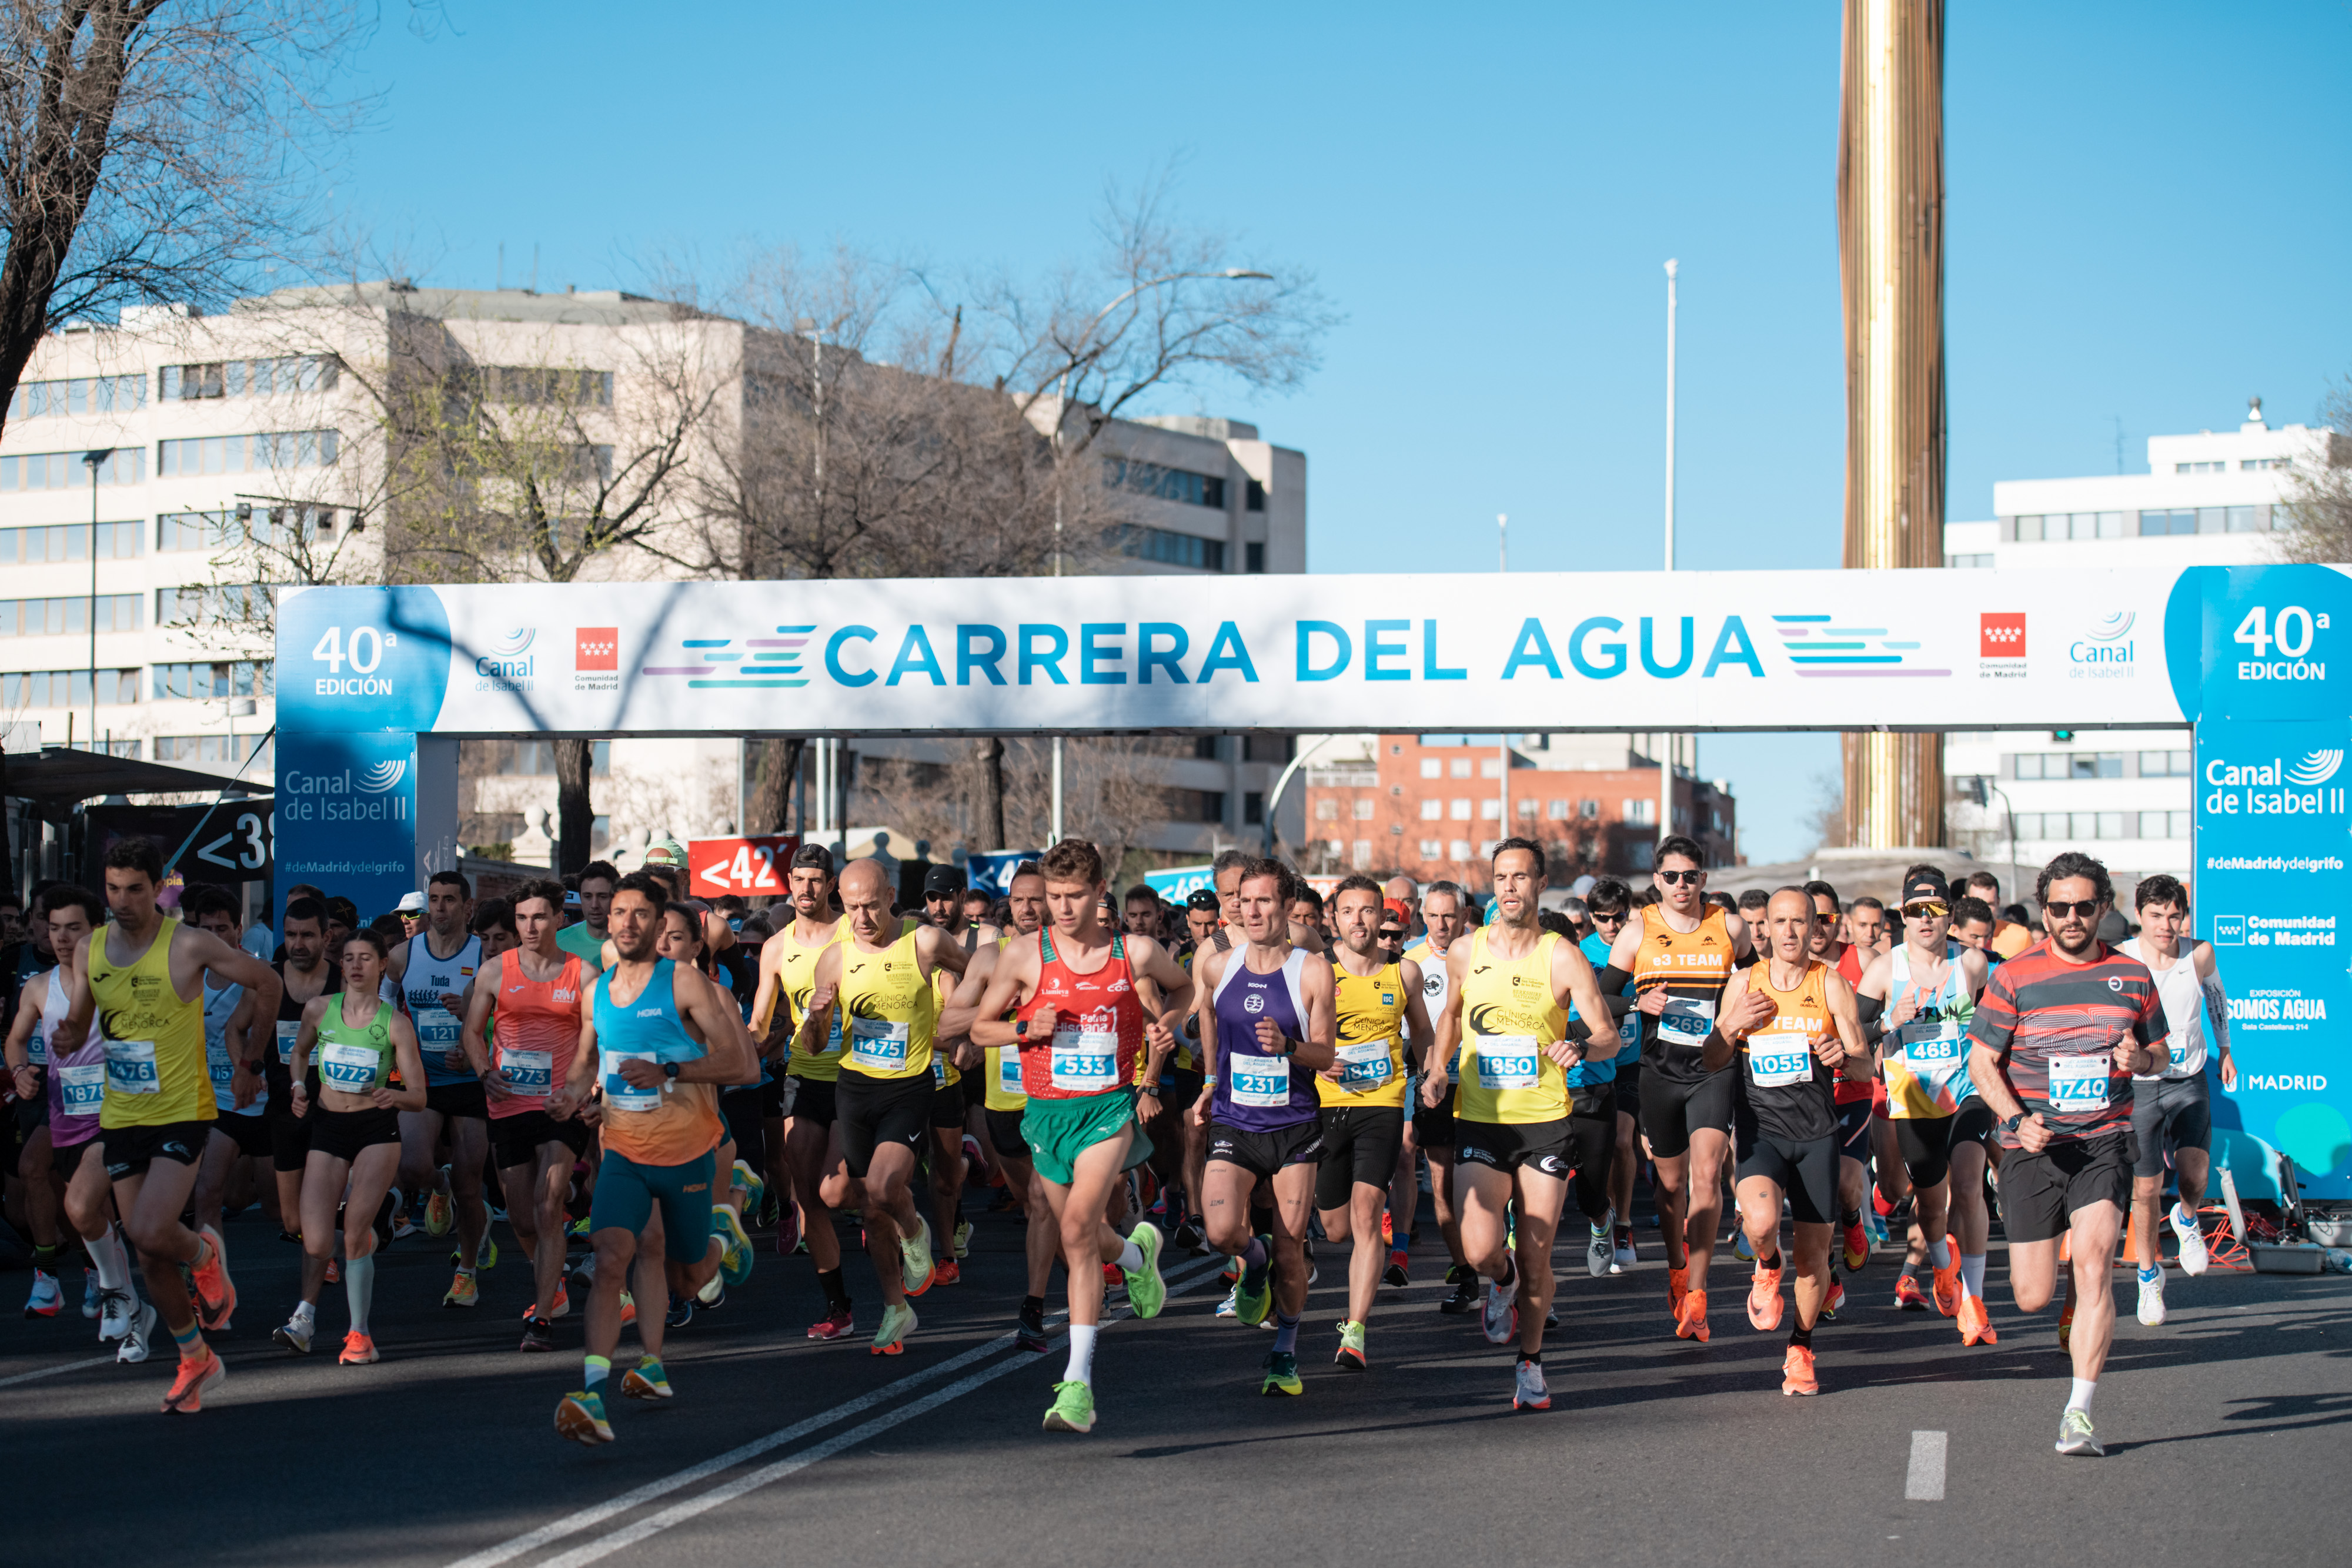 Canal de Isabel II reúne a casi  participantes en la 40ª edición de la  Carrera del Agua - Canal de Isabel II